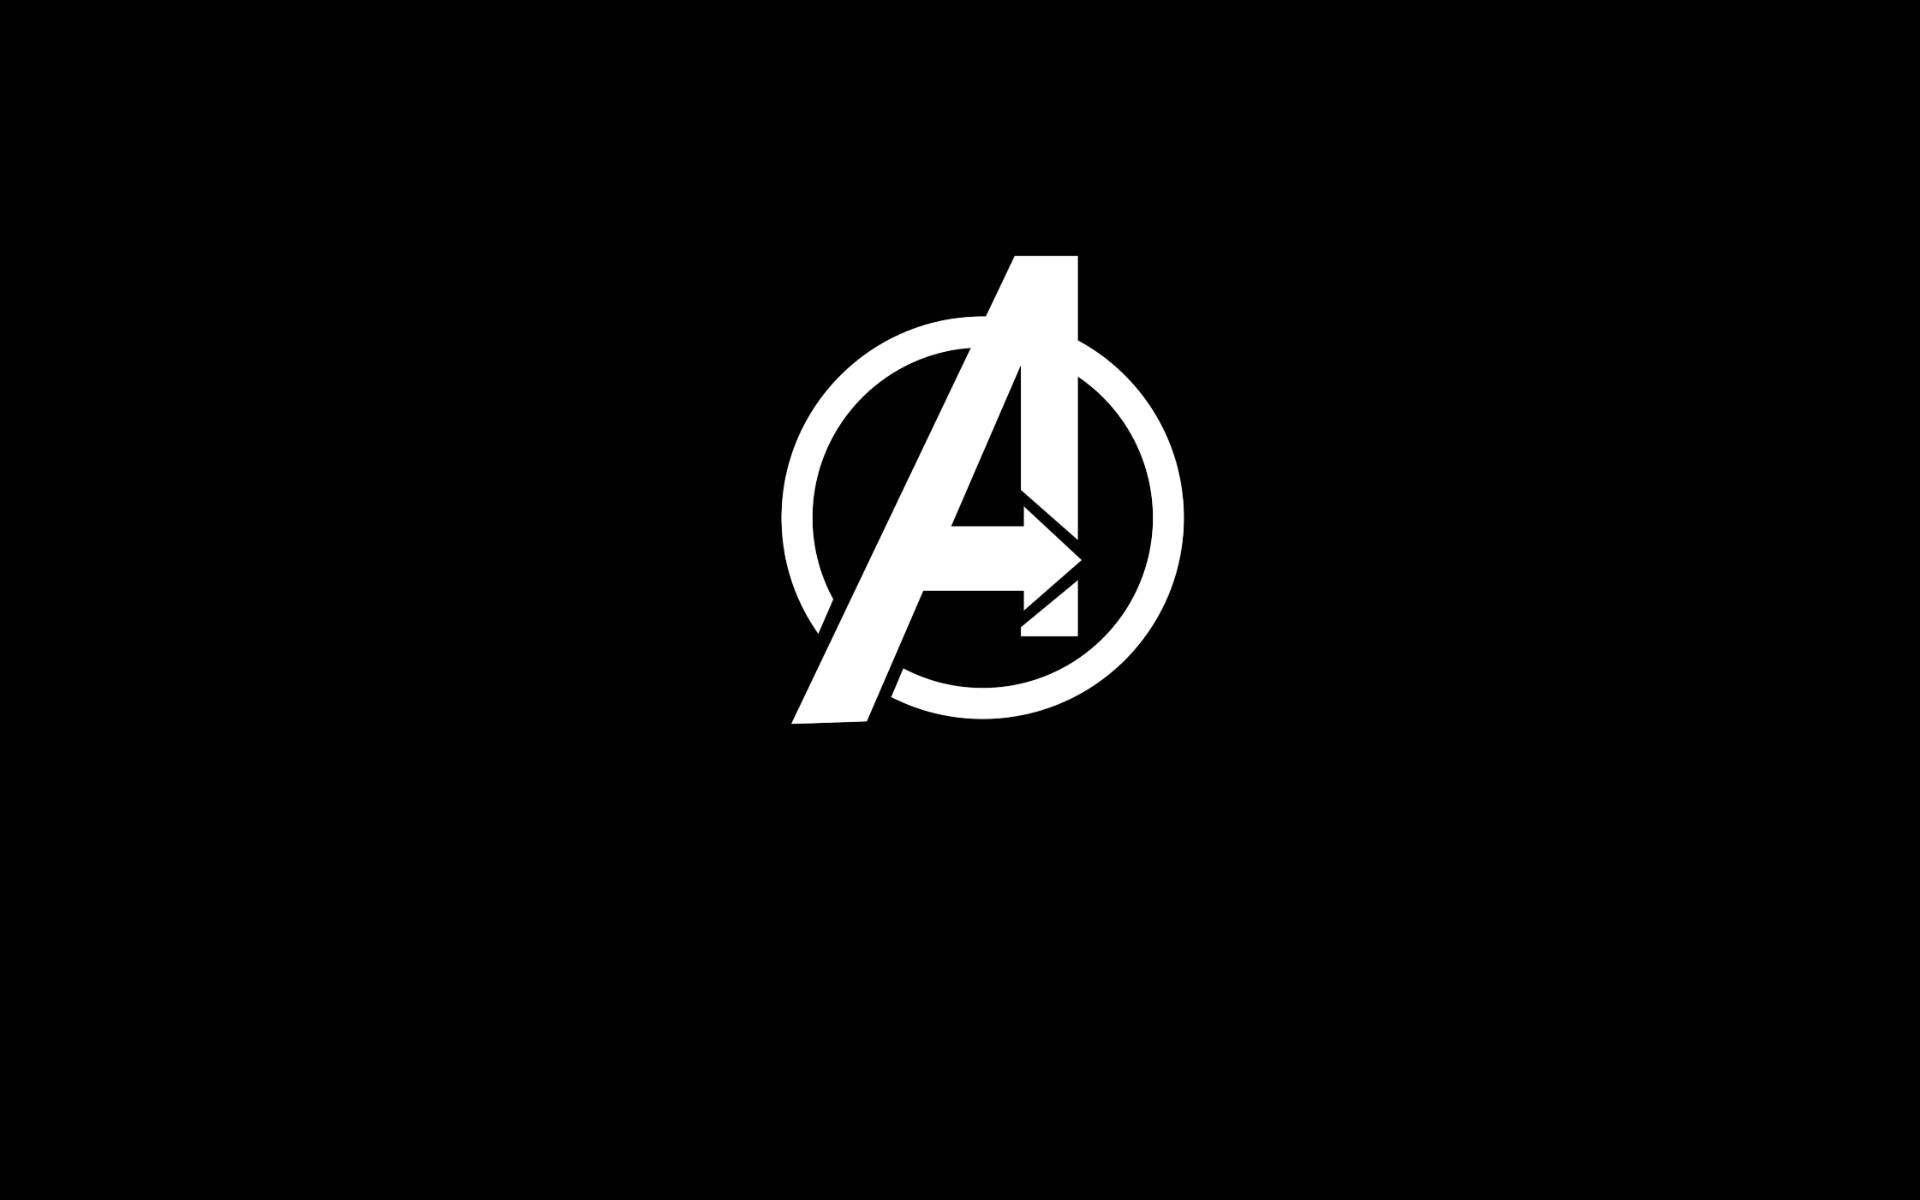 White Avengers Logo In Solid Black